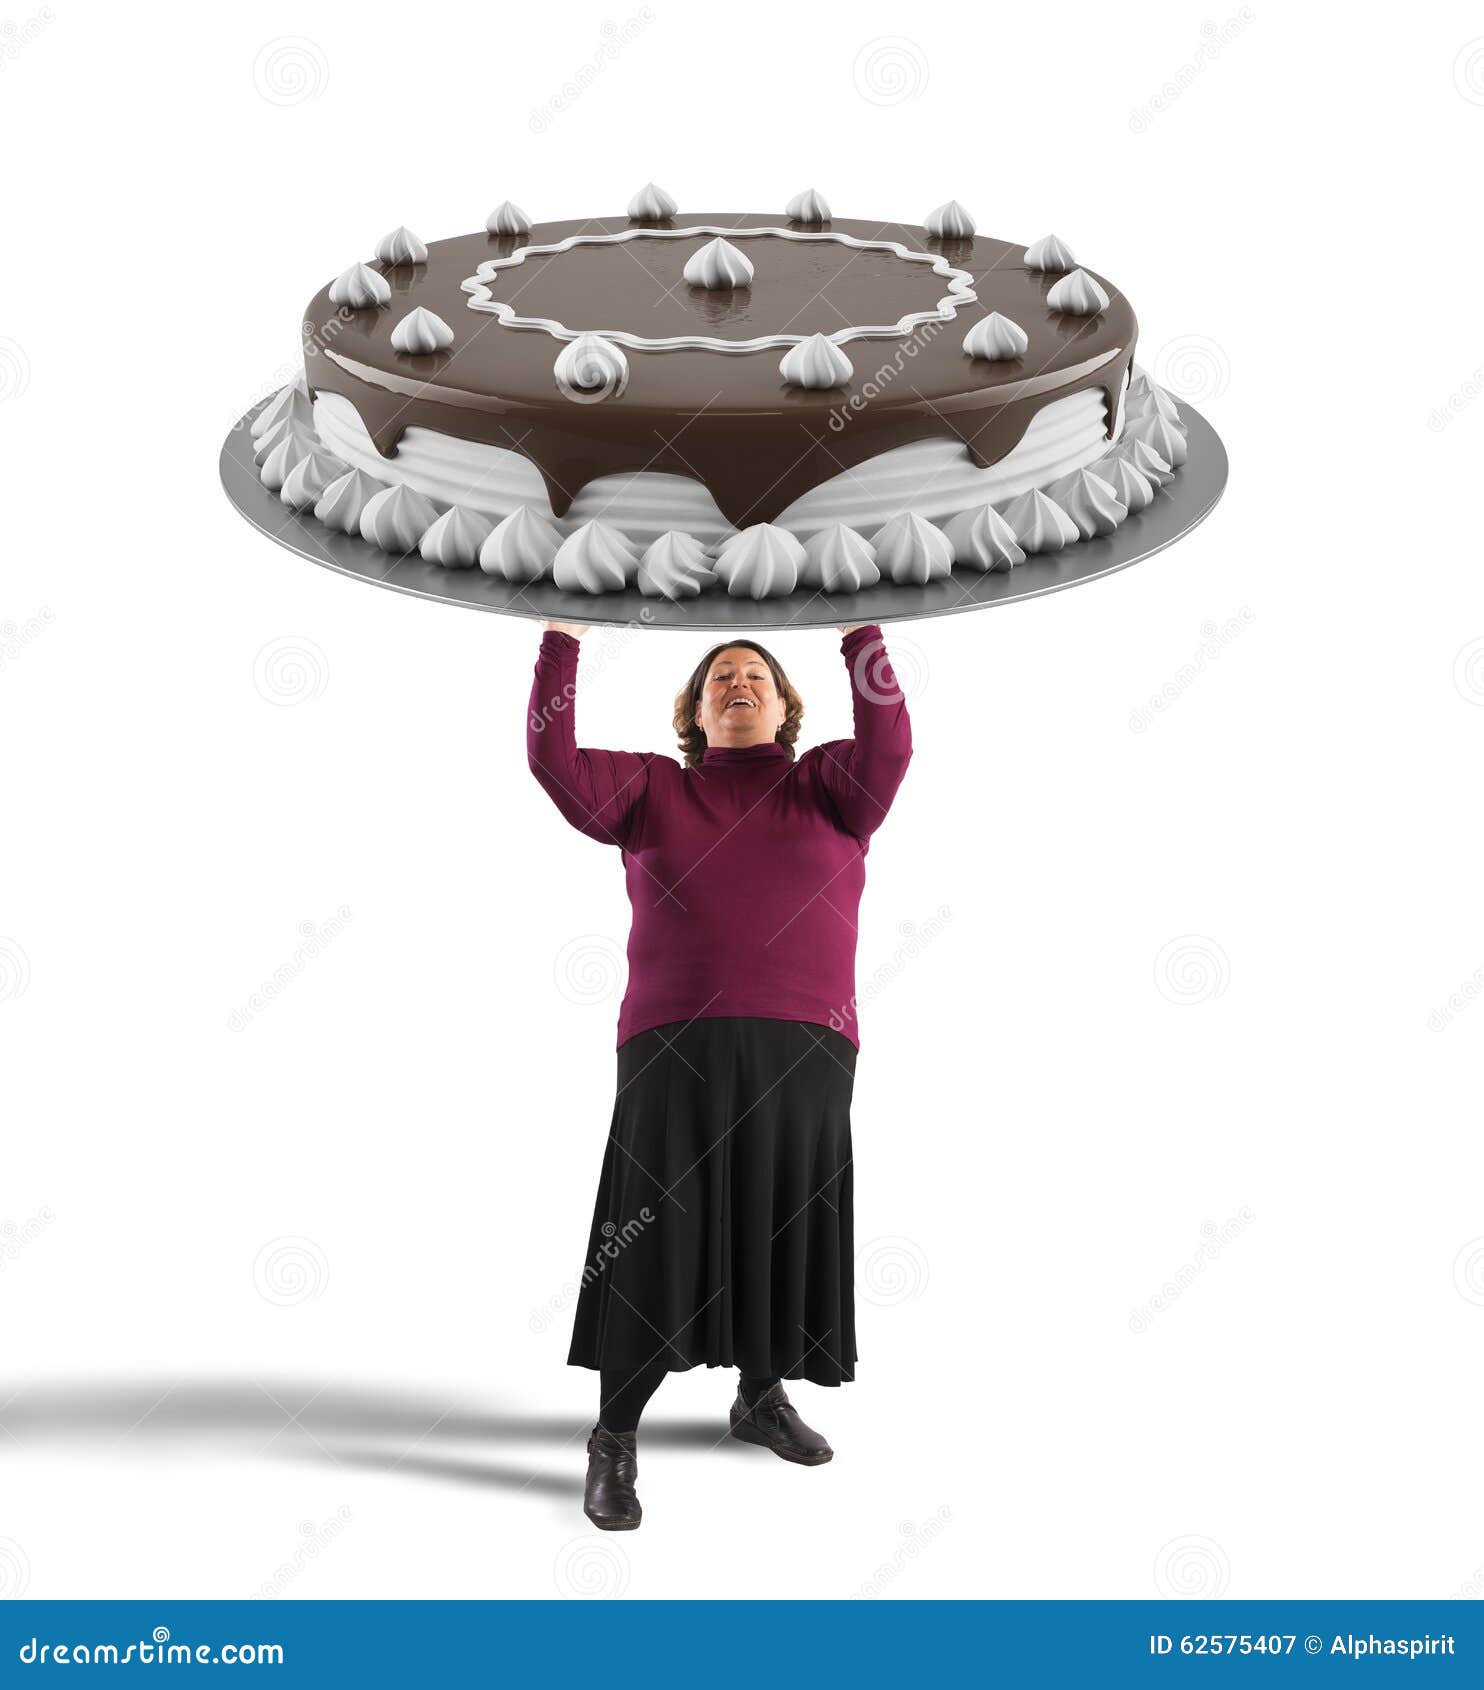 Margarita Adversario Parpadeo Torta de chocolate grande imagen de archivo. Imagen de gusto - 62575407